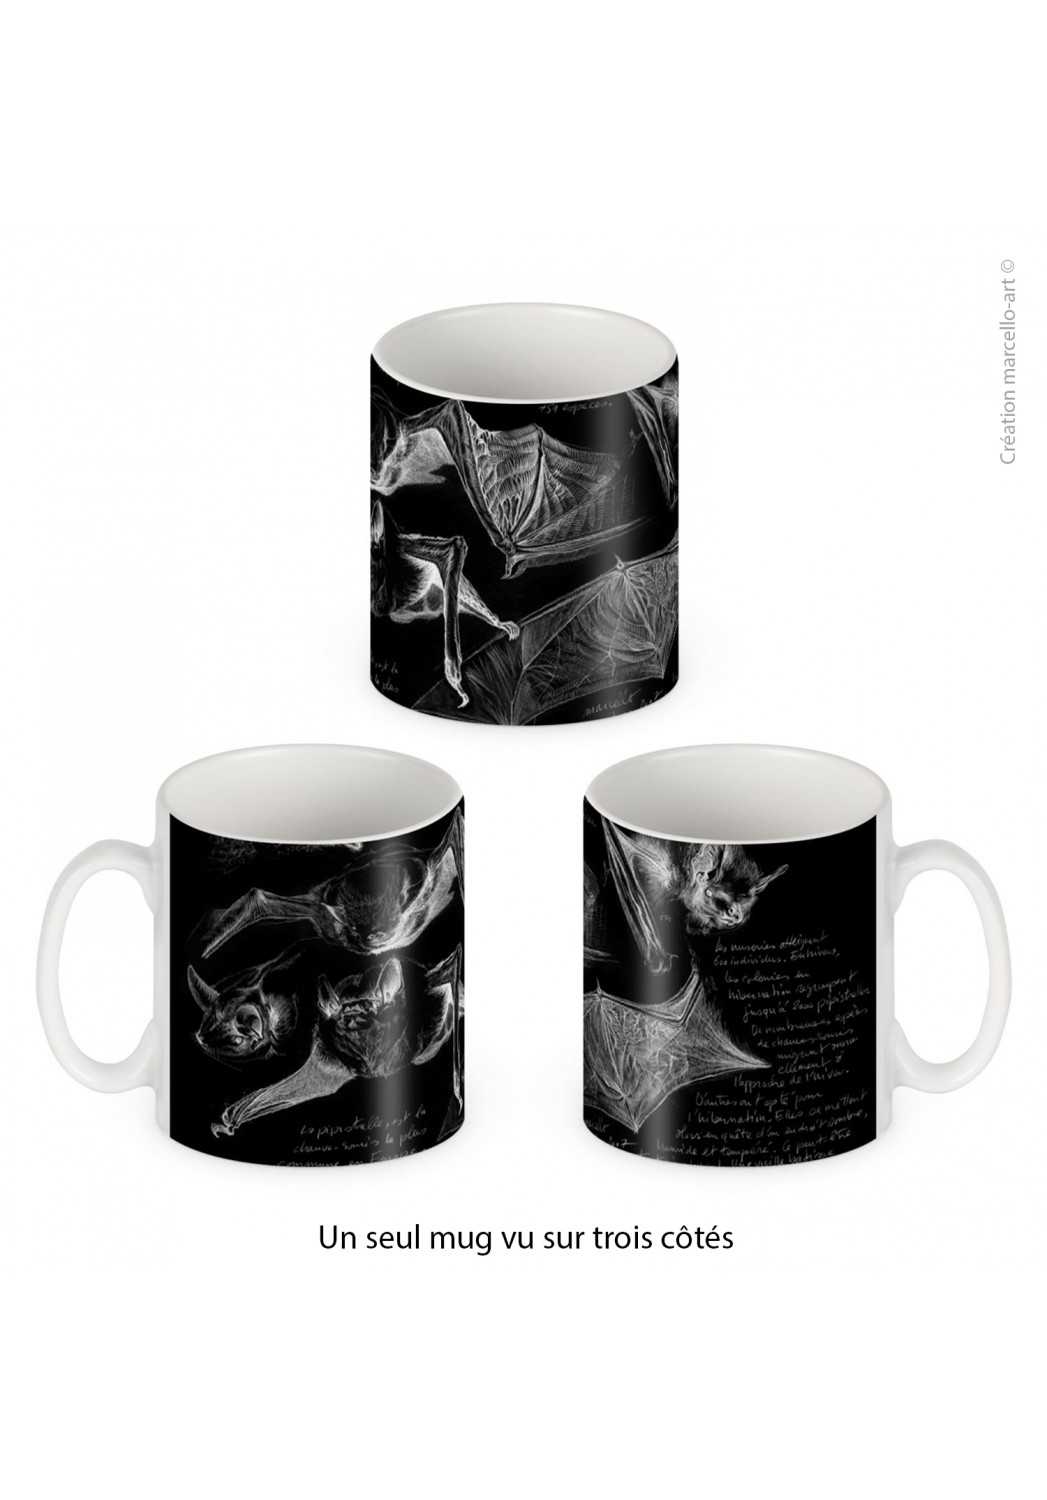 Marcello-art: Decoration accessoiries Porcelain mug 31 pipistrelle black